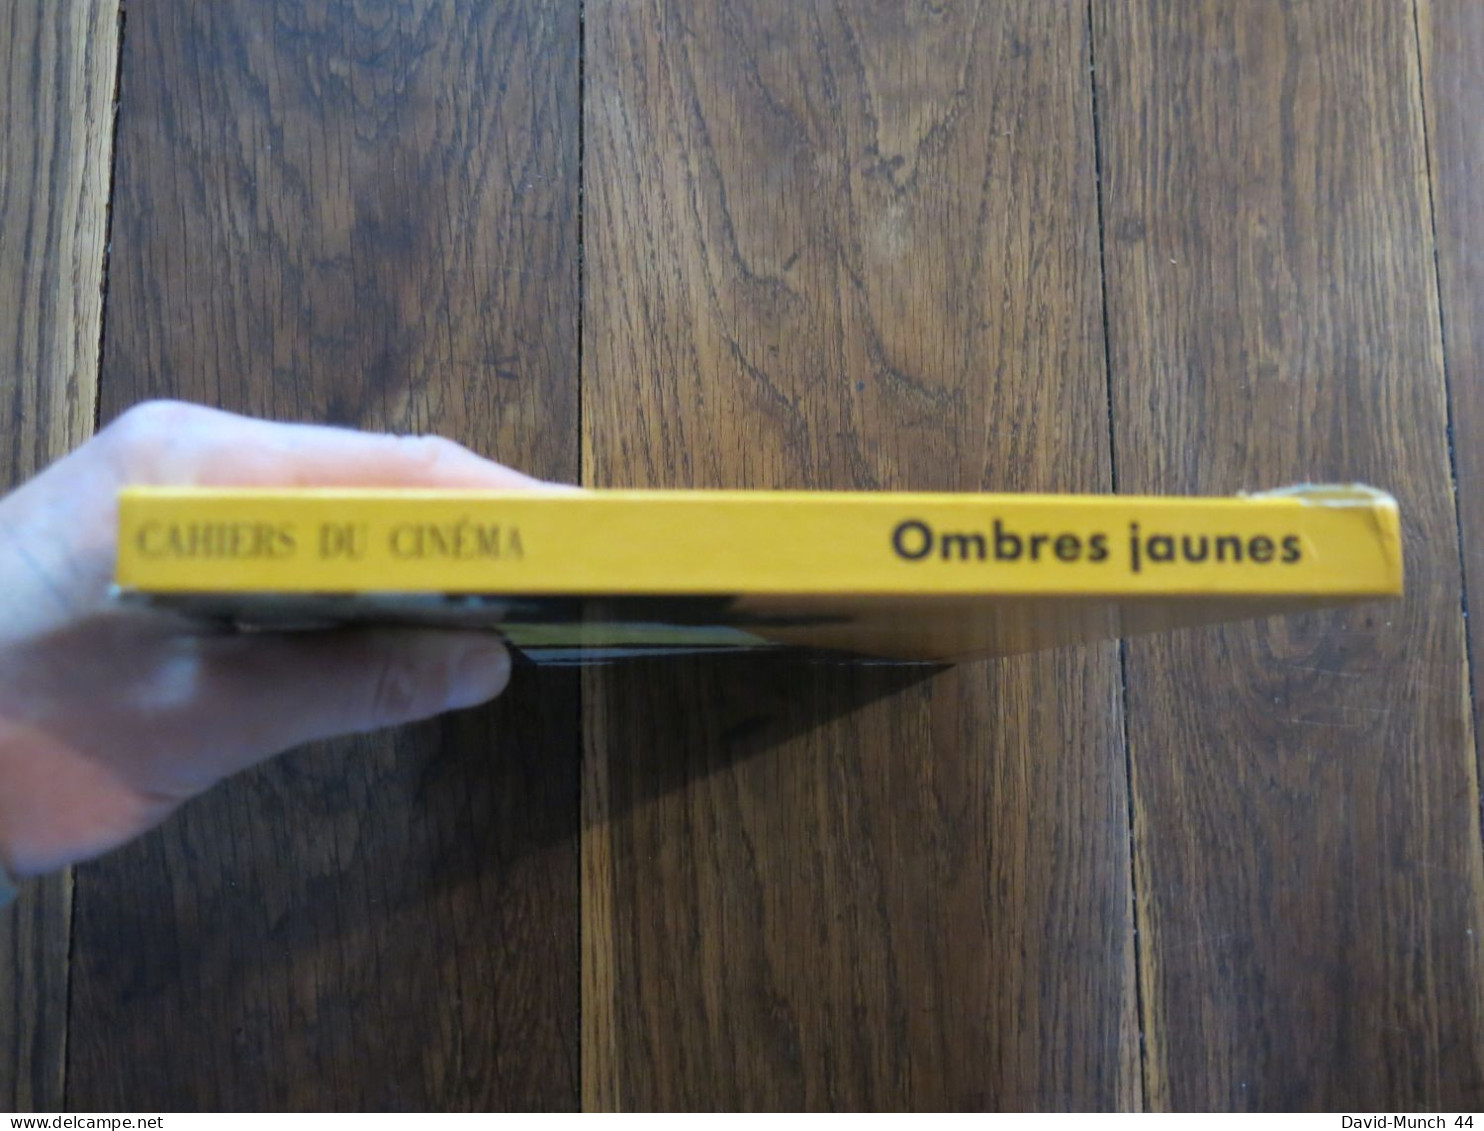 Ombres Jaunes, Journal De Tournage " Le Dernier Empereur " De Bernardo Bertolucci De F.S. Gérard. Cahiers Du Cinéma.1987 - Cinéma/Télévision